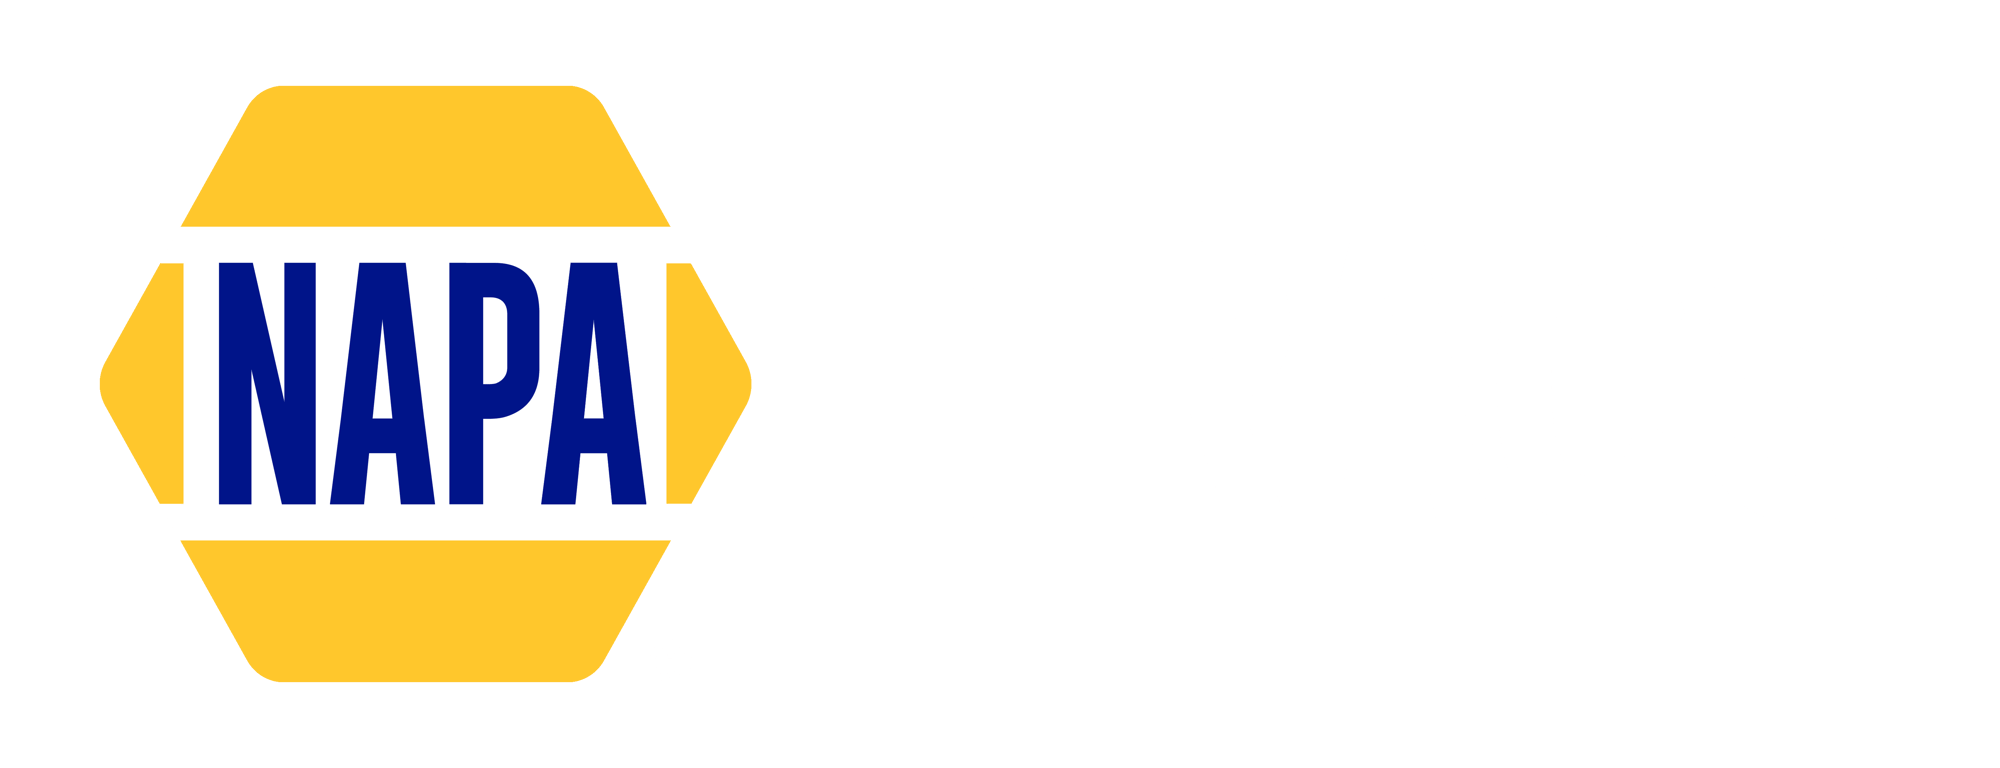 NAPA_TRACS_Logo_OnBlue